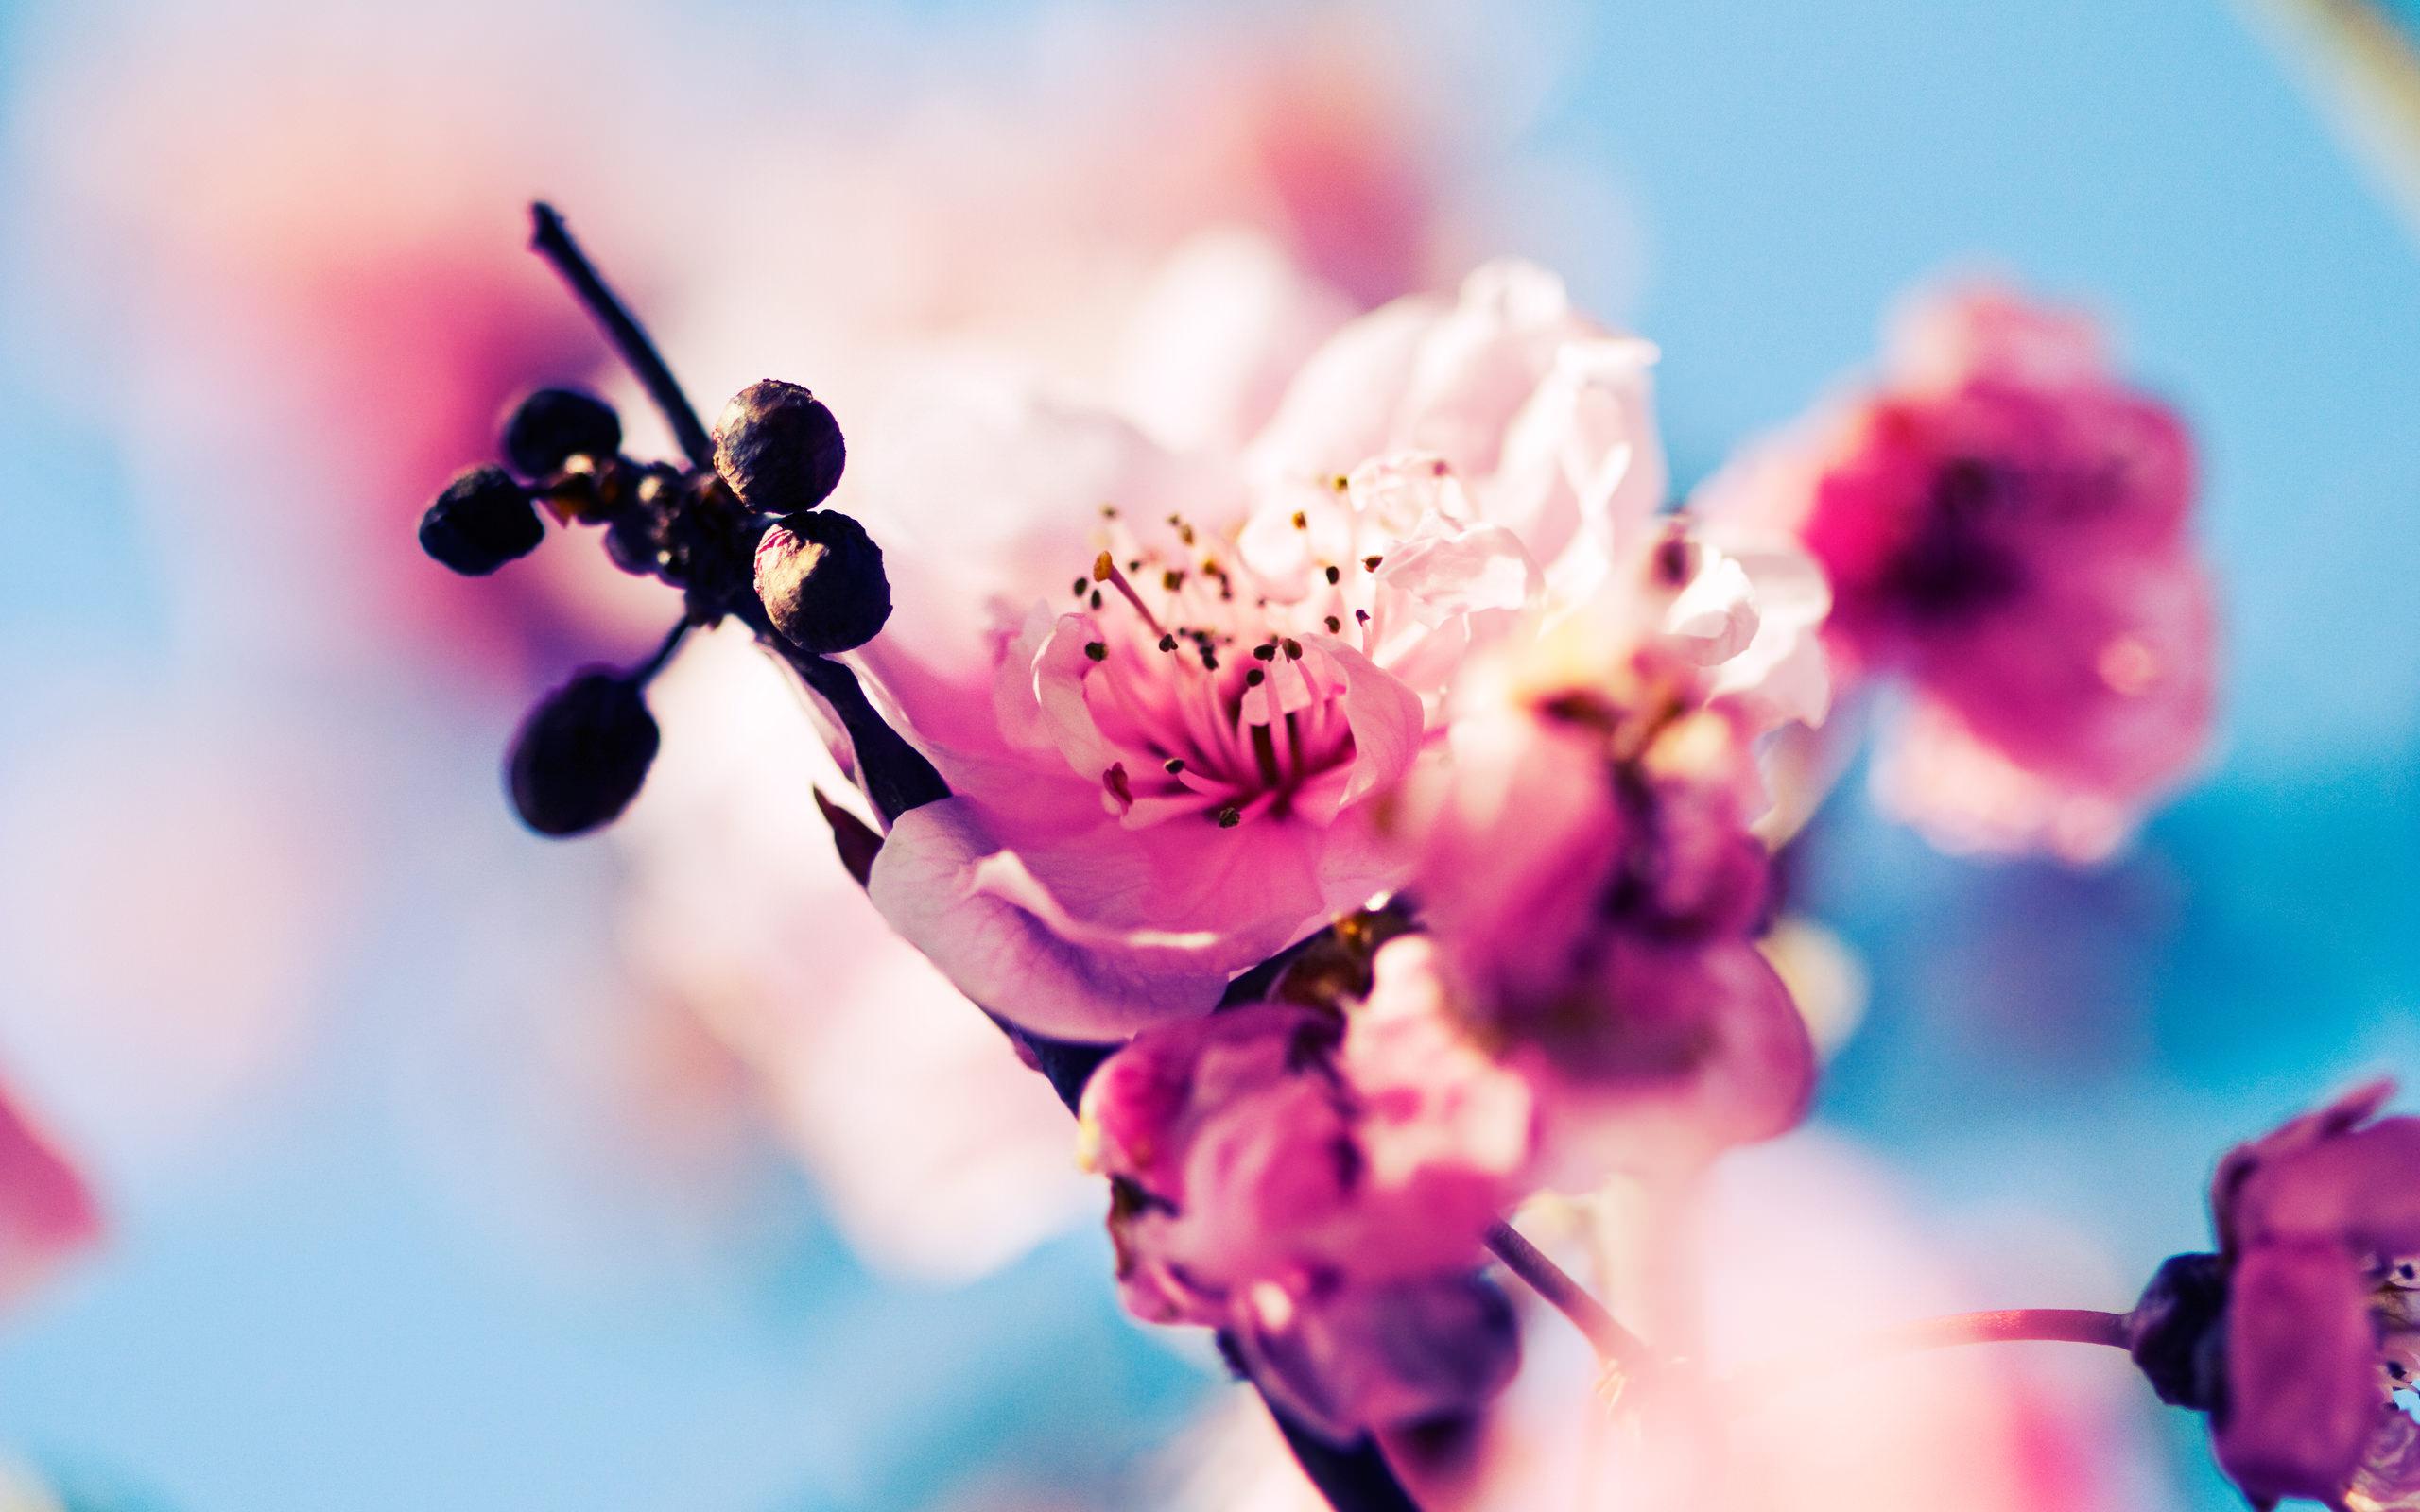 Bilde Fotoattēlā - skaisti ziedi uz koka zara 3